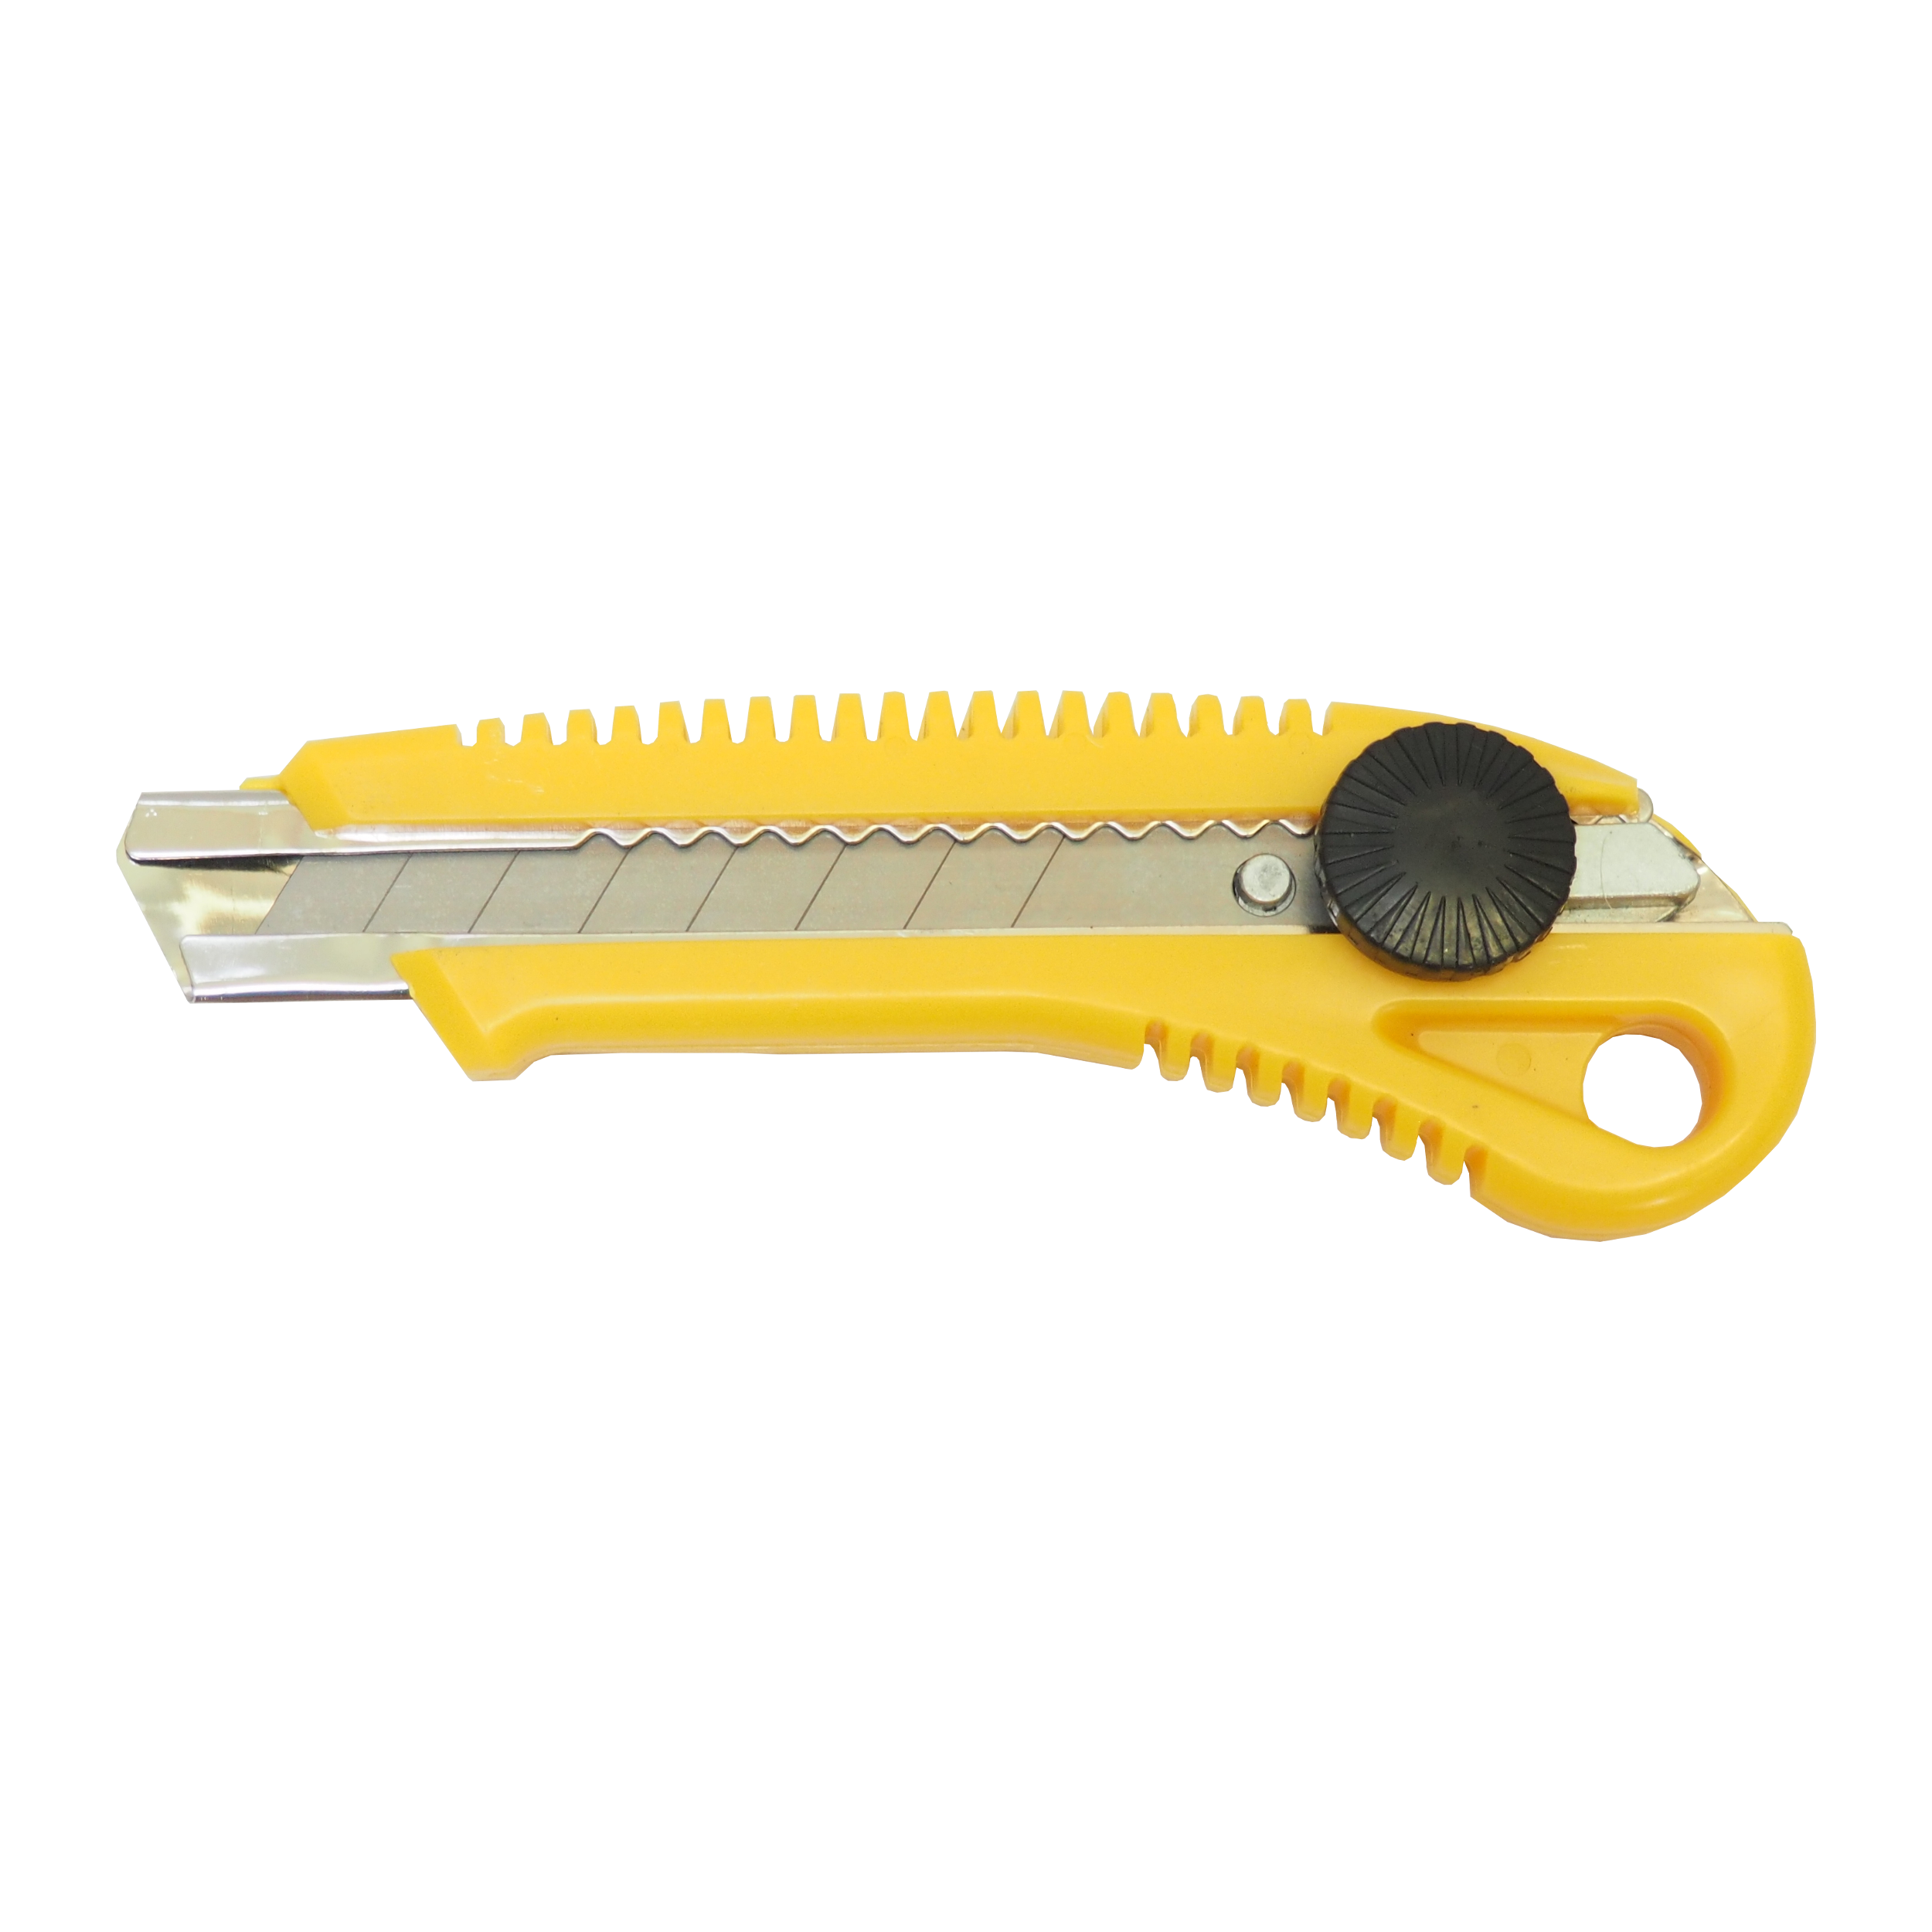 TOPTRADE nůž odlamovací, plastový, s kovovou výztuhou a šroubovou aretací, 18 mm 0.07 Kg TOP Sklad4 200207 177